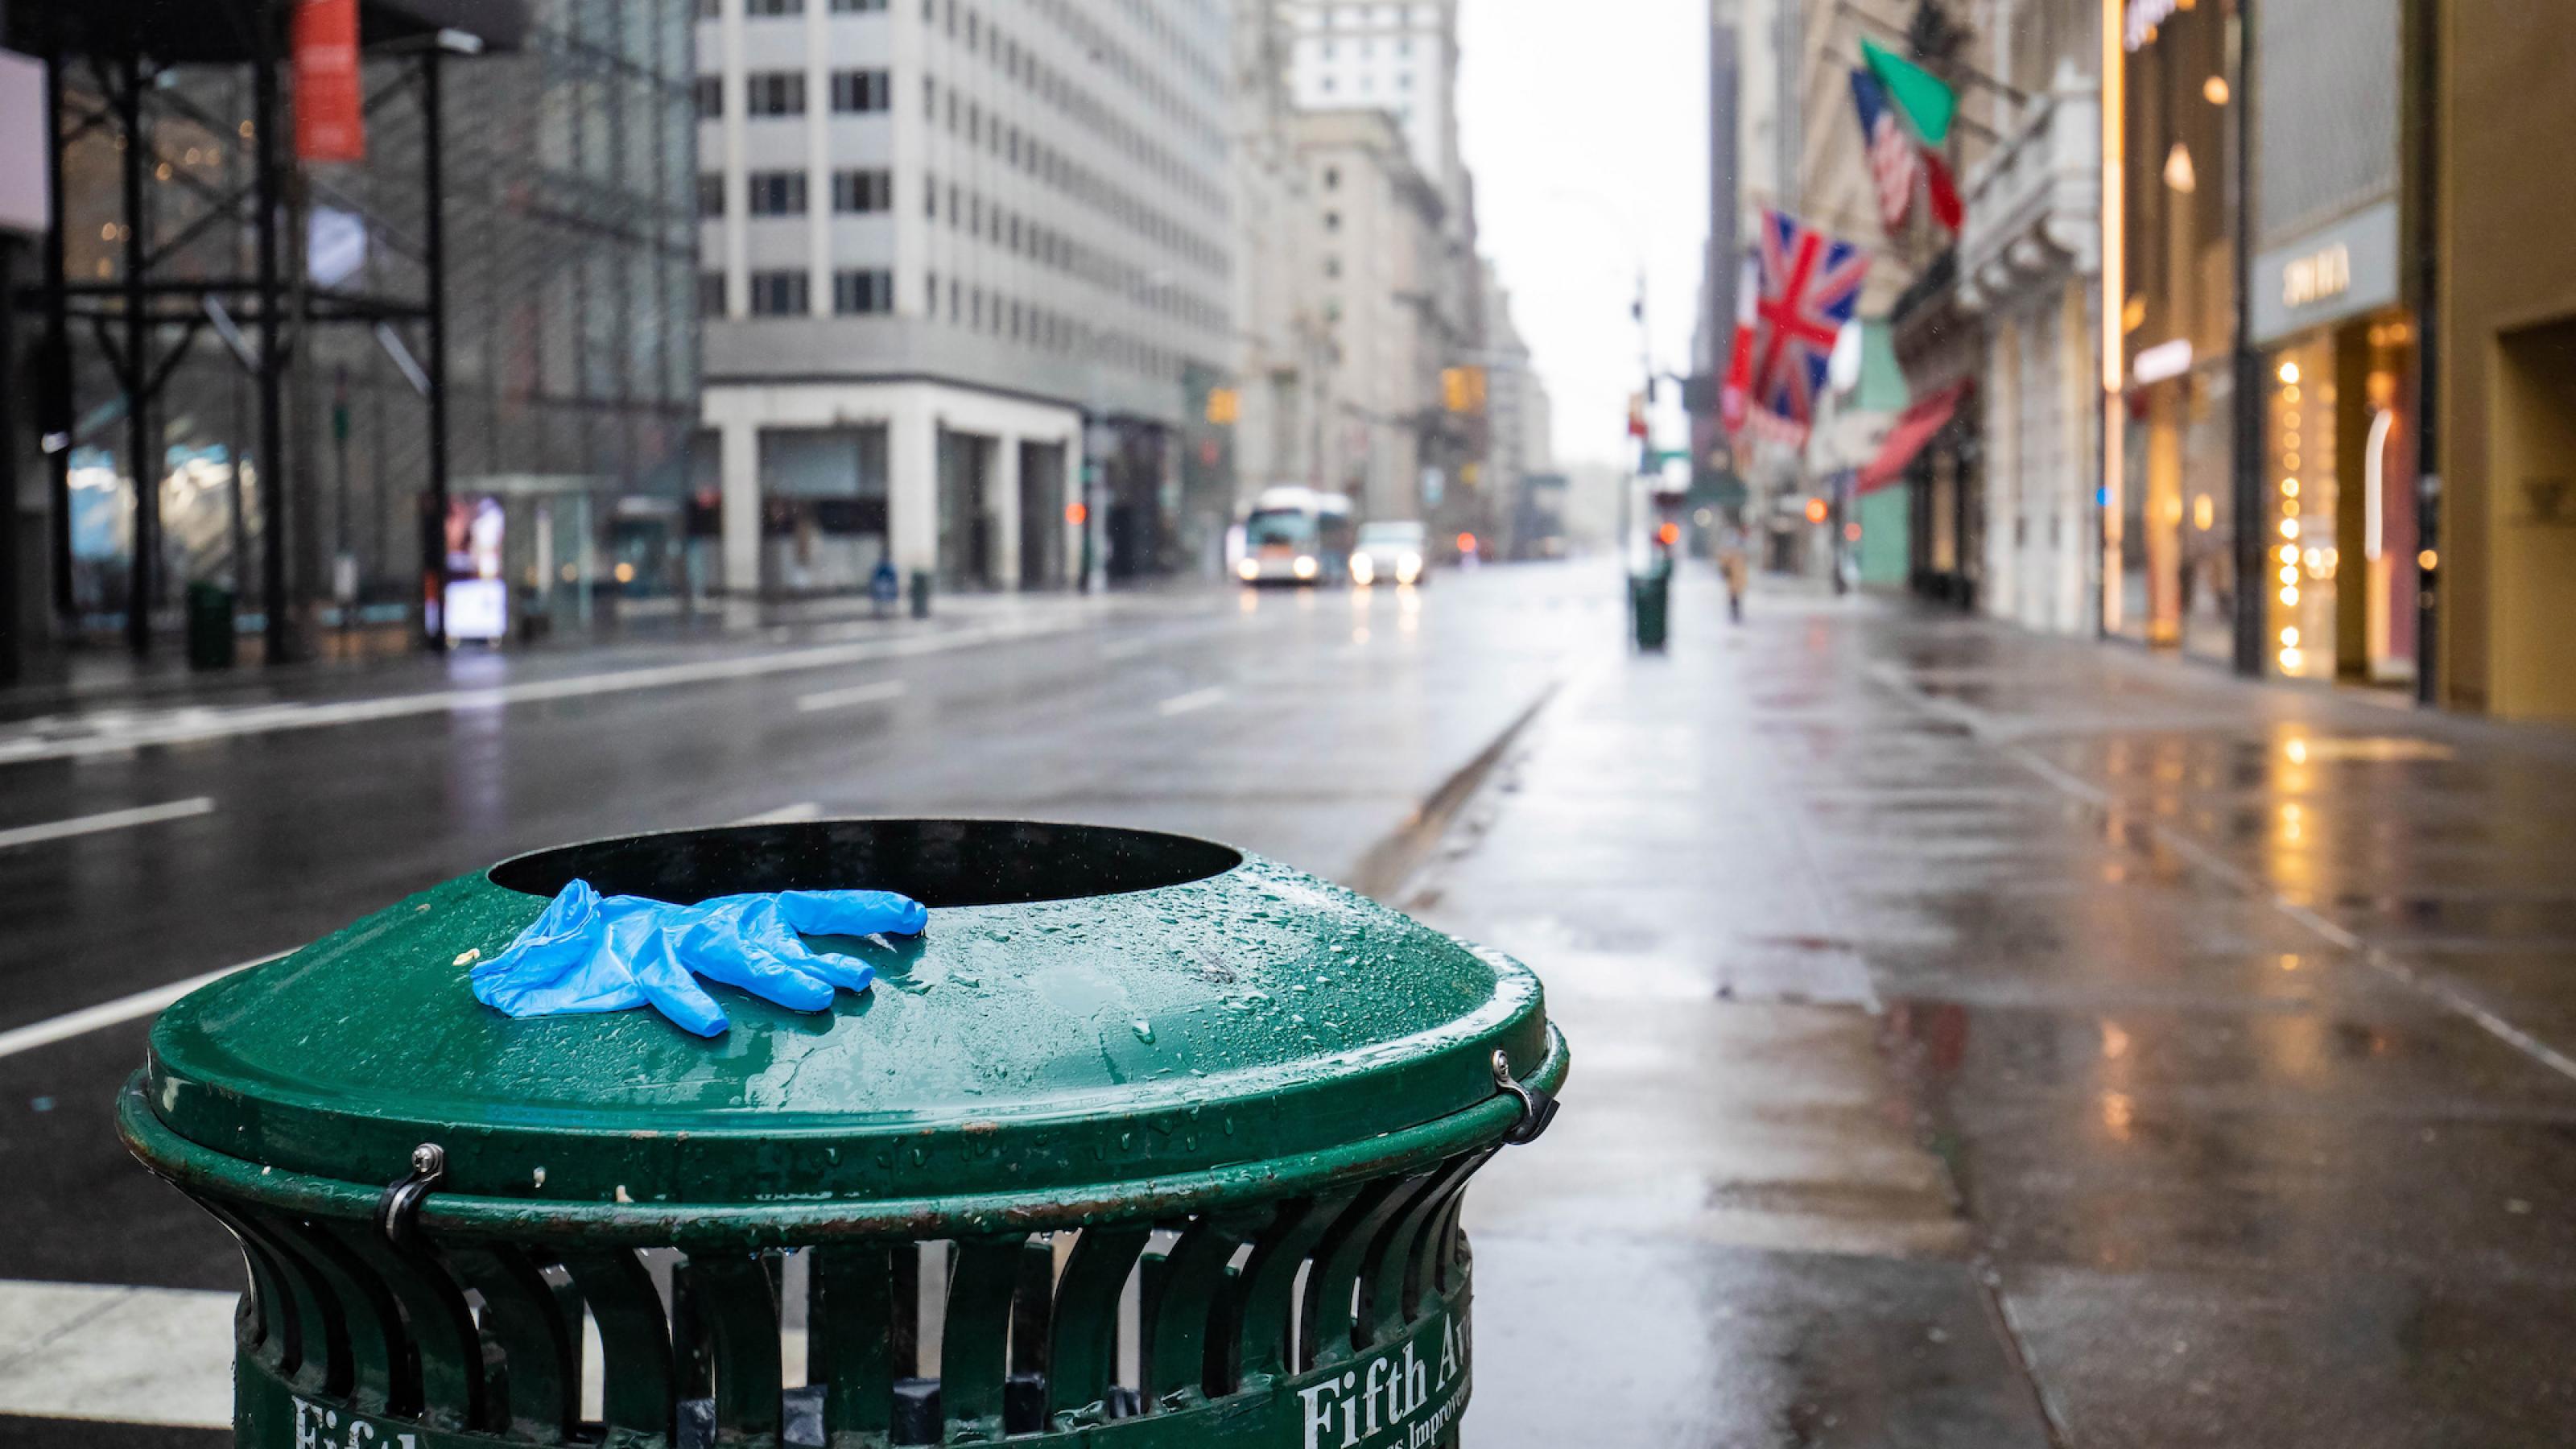 Das Bild zeigt einen Abfalleimer, auf dem ein Einweghandschuh liegt, dahinter eine leere Straße.